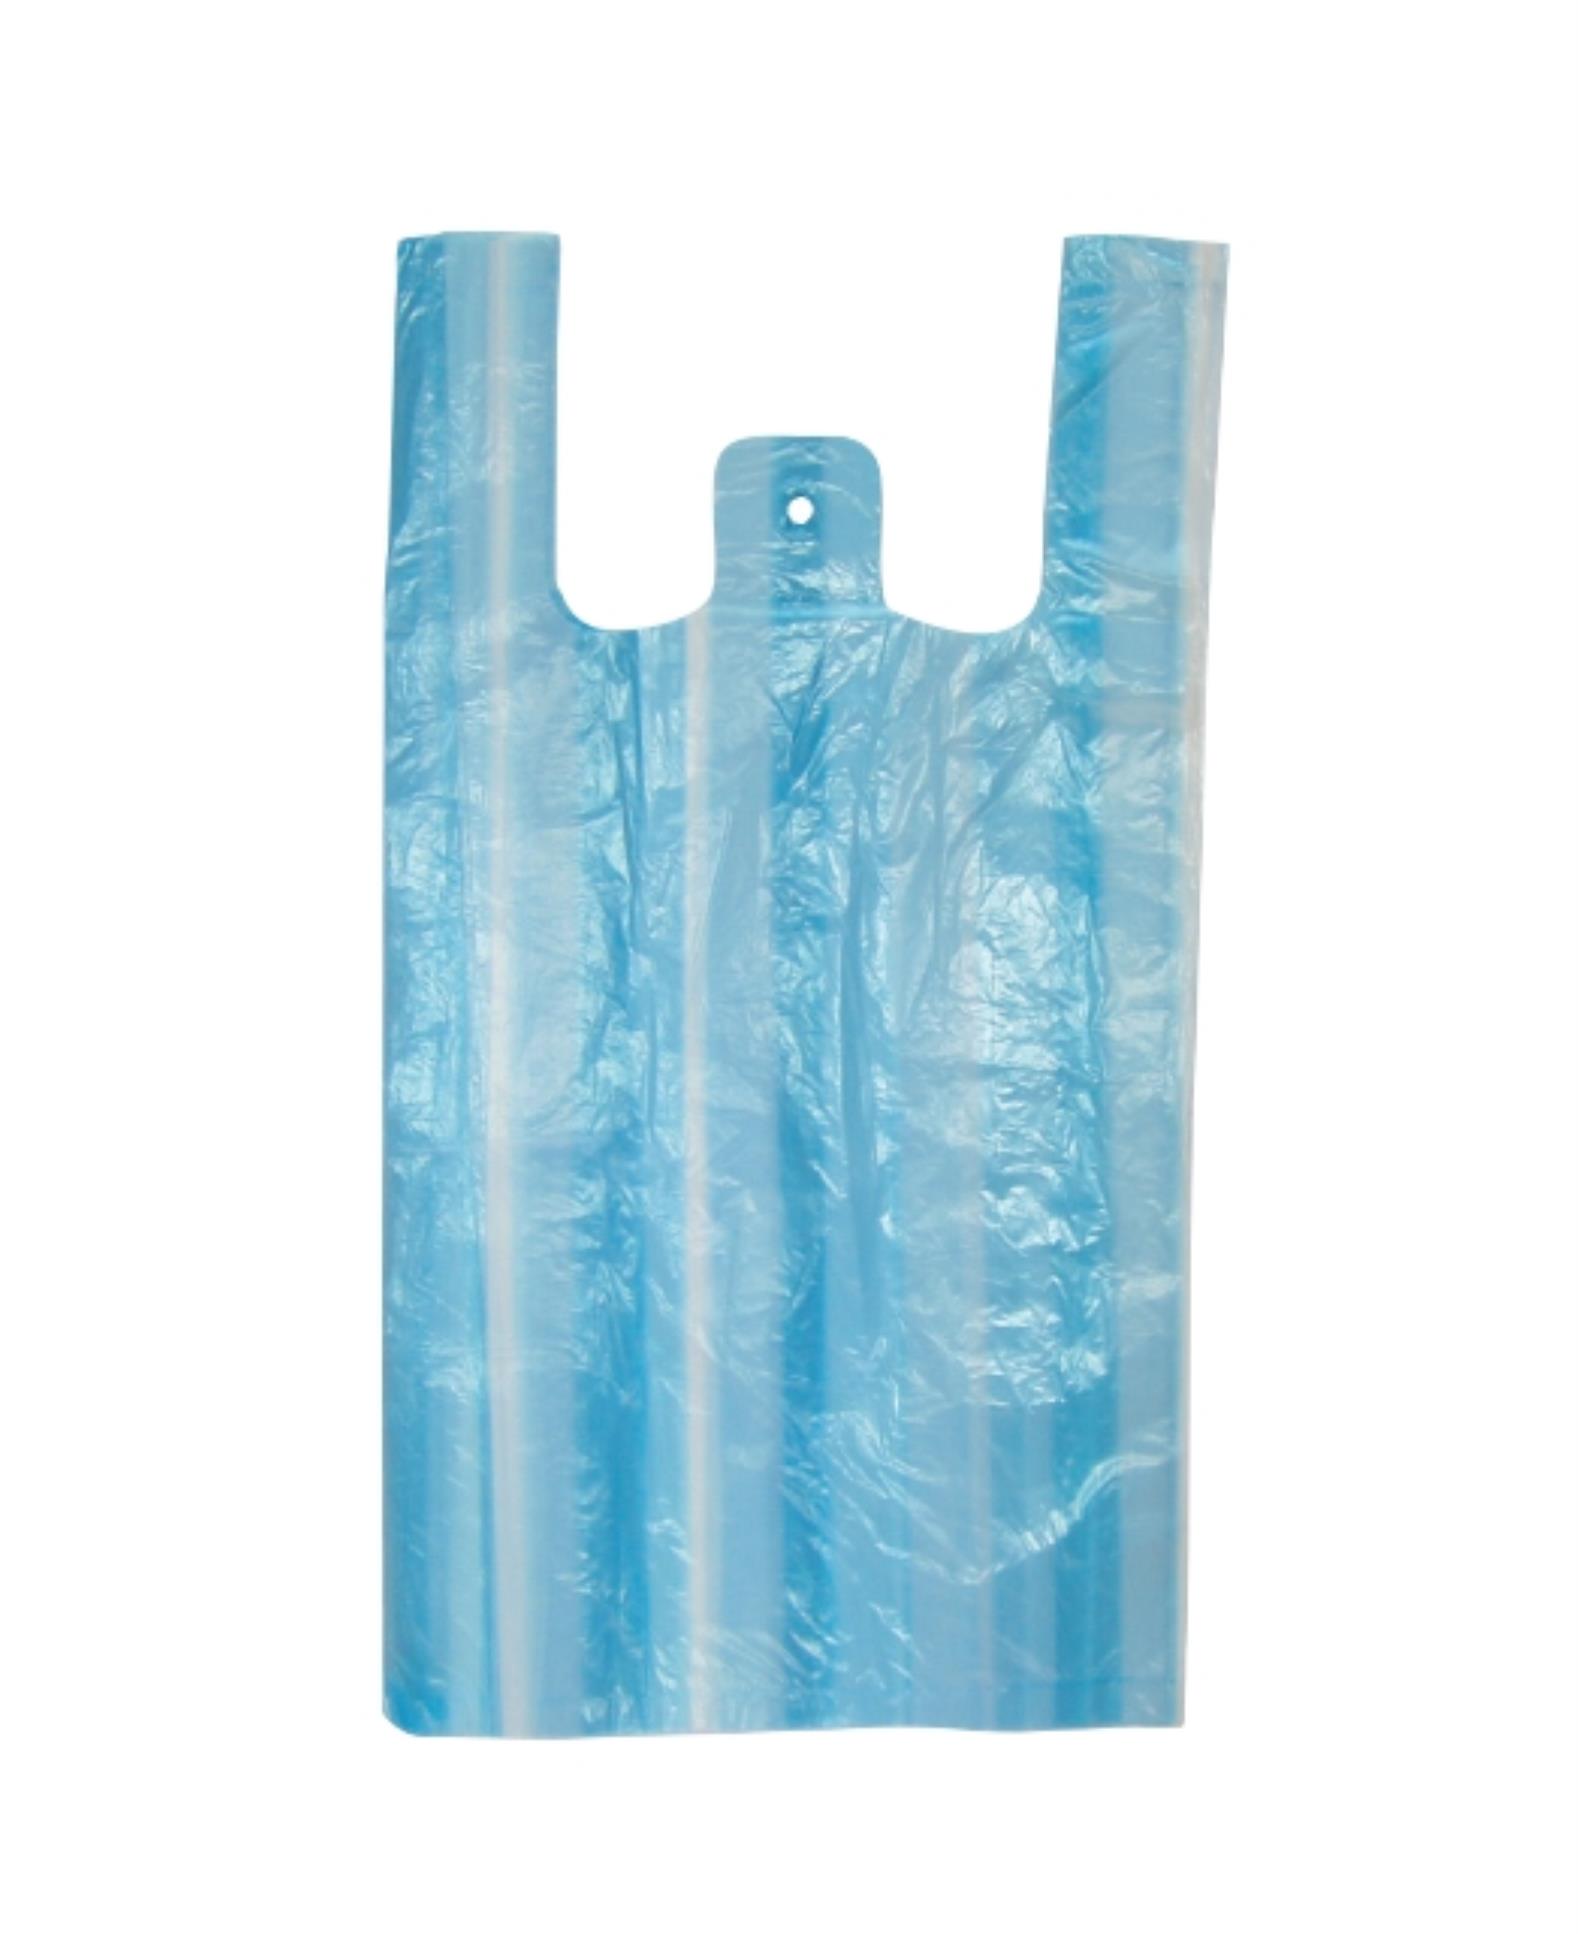 Mikrotenová taška - modro-bílé pruhy, 100 ks